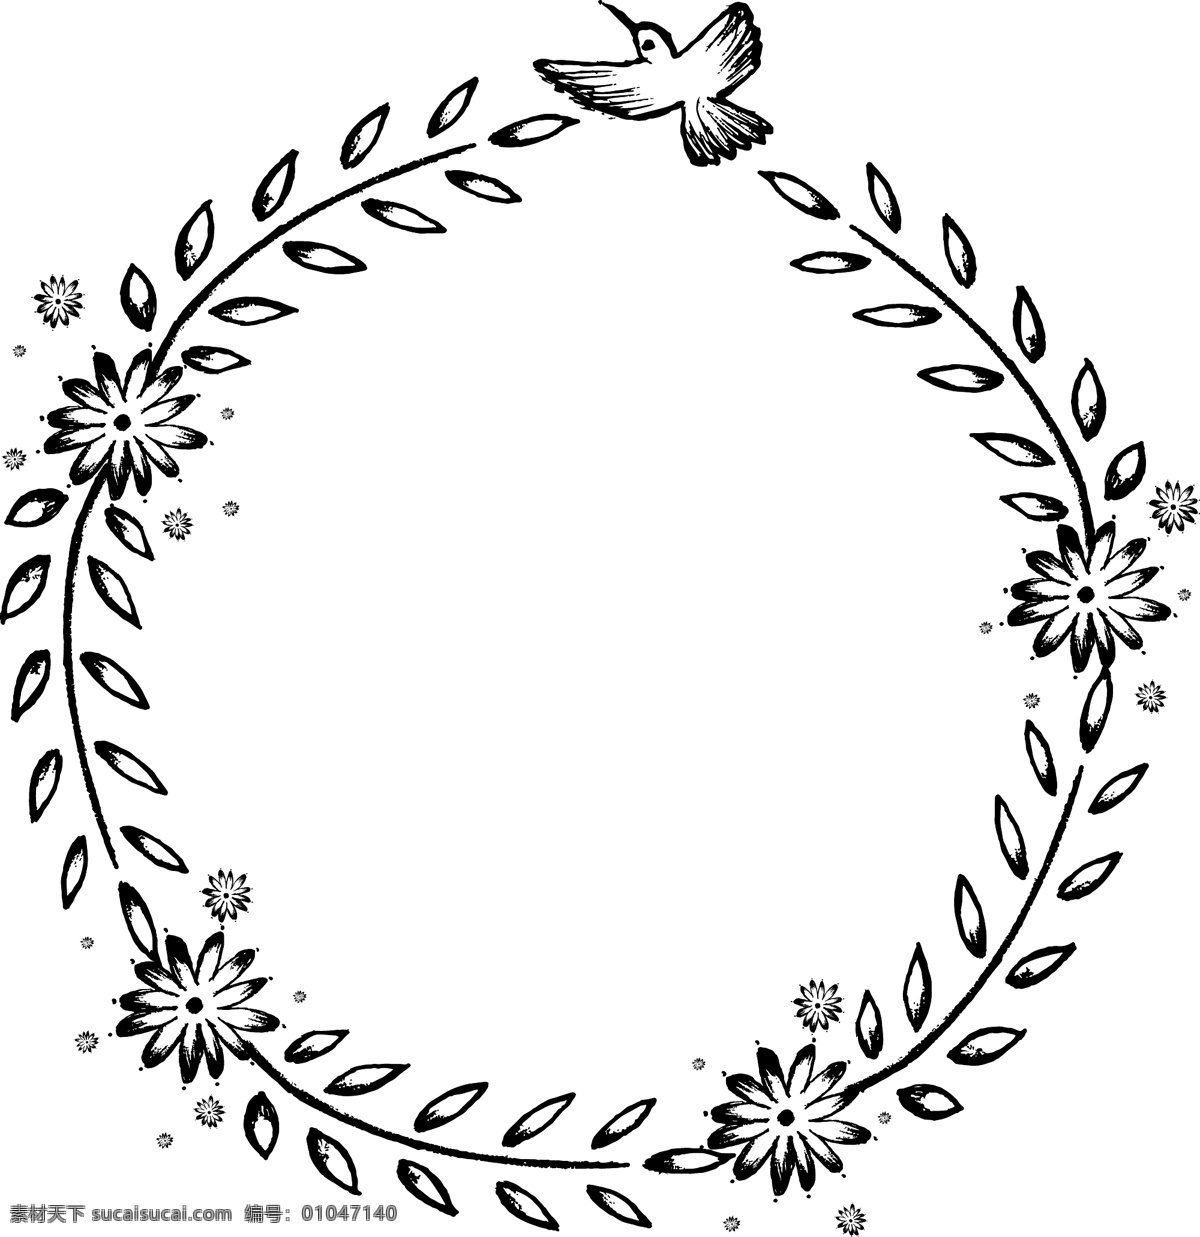 黑白 小鸟 卡通 手绘 边框 橄榄 枝叶 花朵 线条背景 几何图案 边框素材